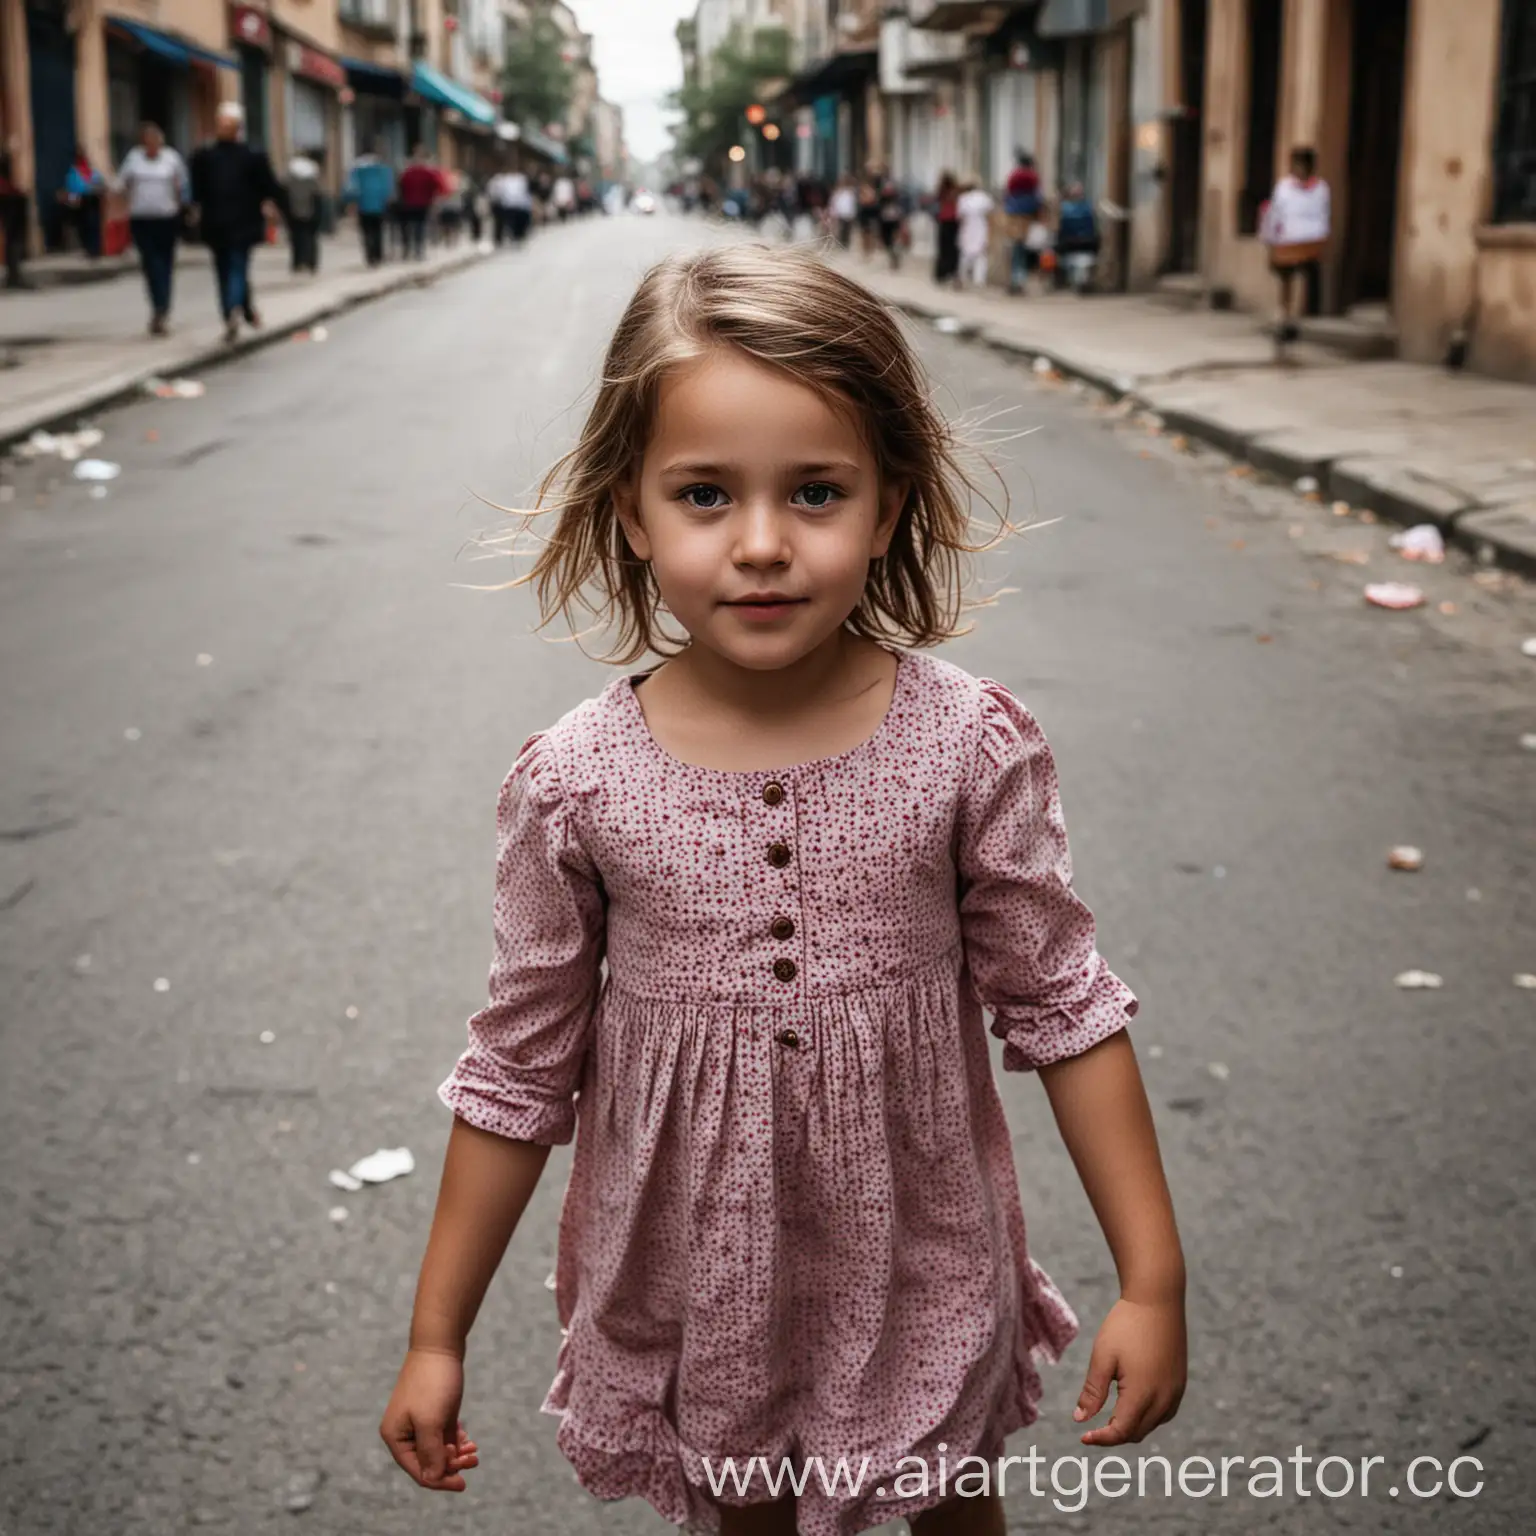 Живое фото ребенка девочки на улице